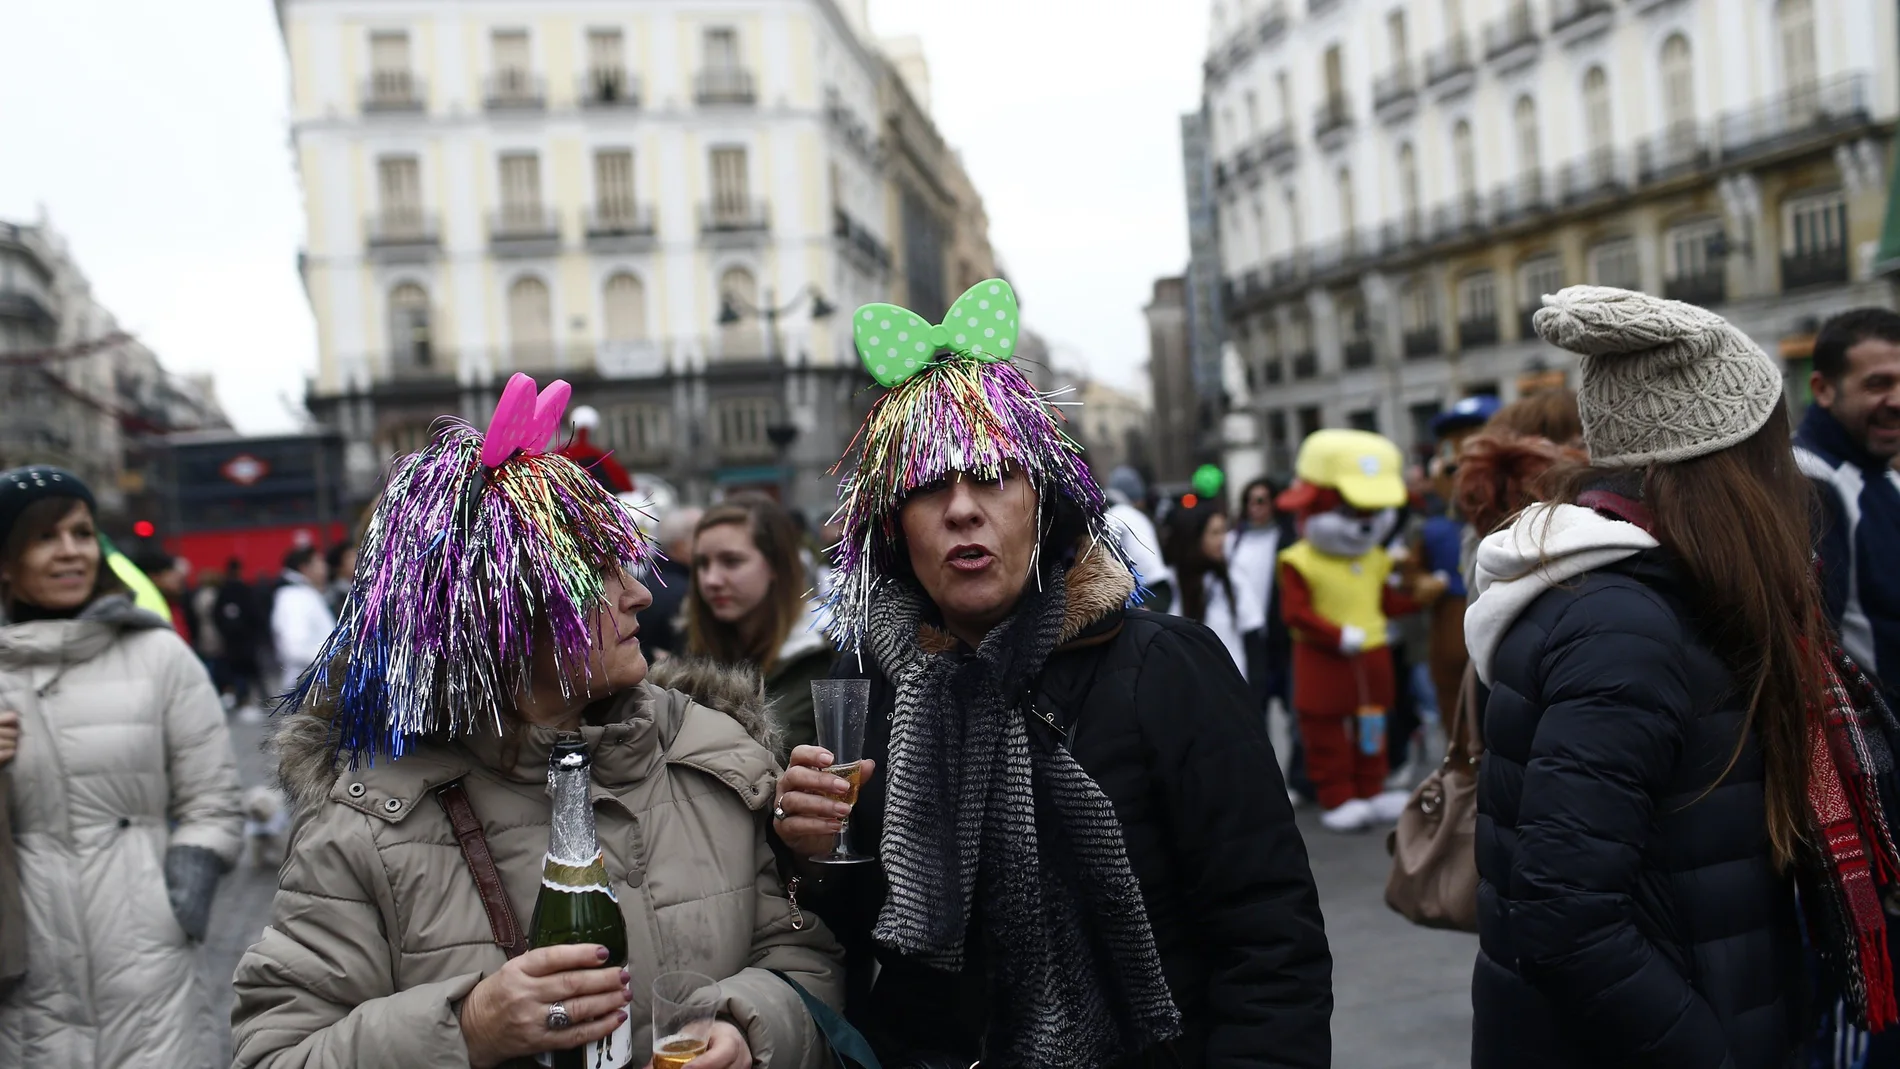 Celebración de las preuvas en la Puerta del Sol de MadridEUROPA PRESS